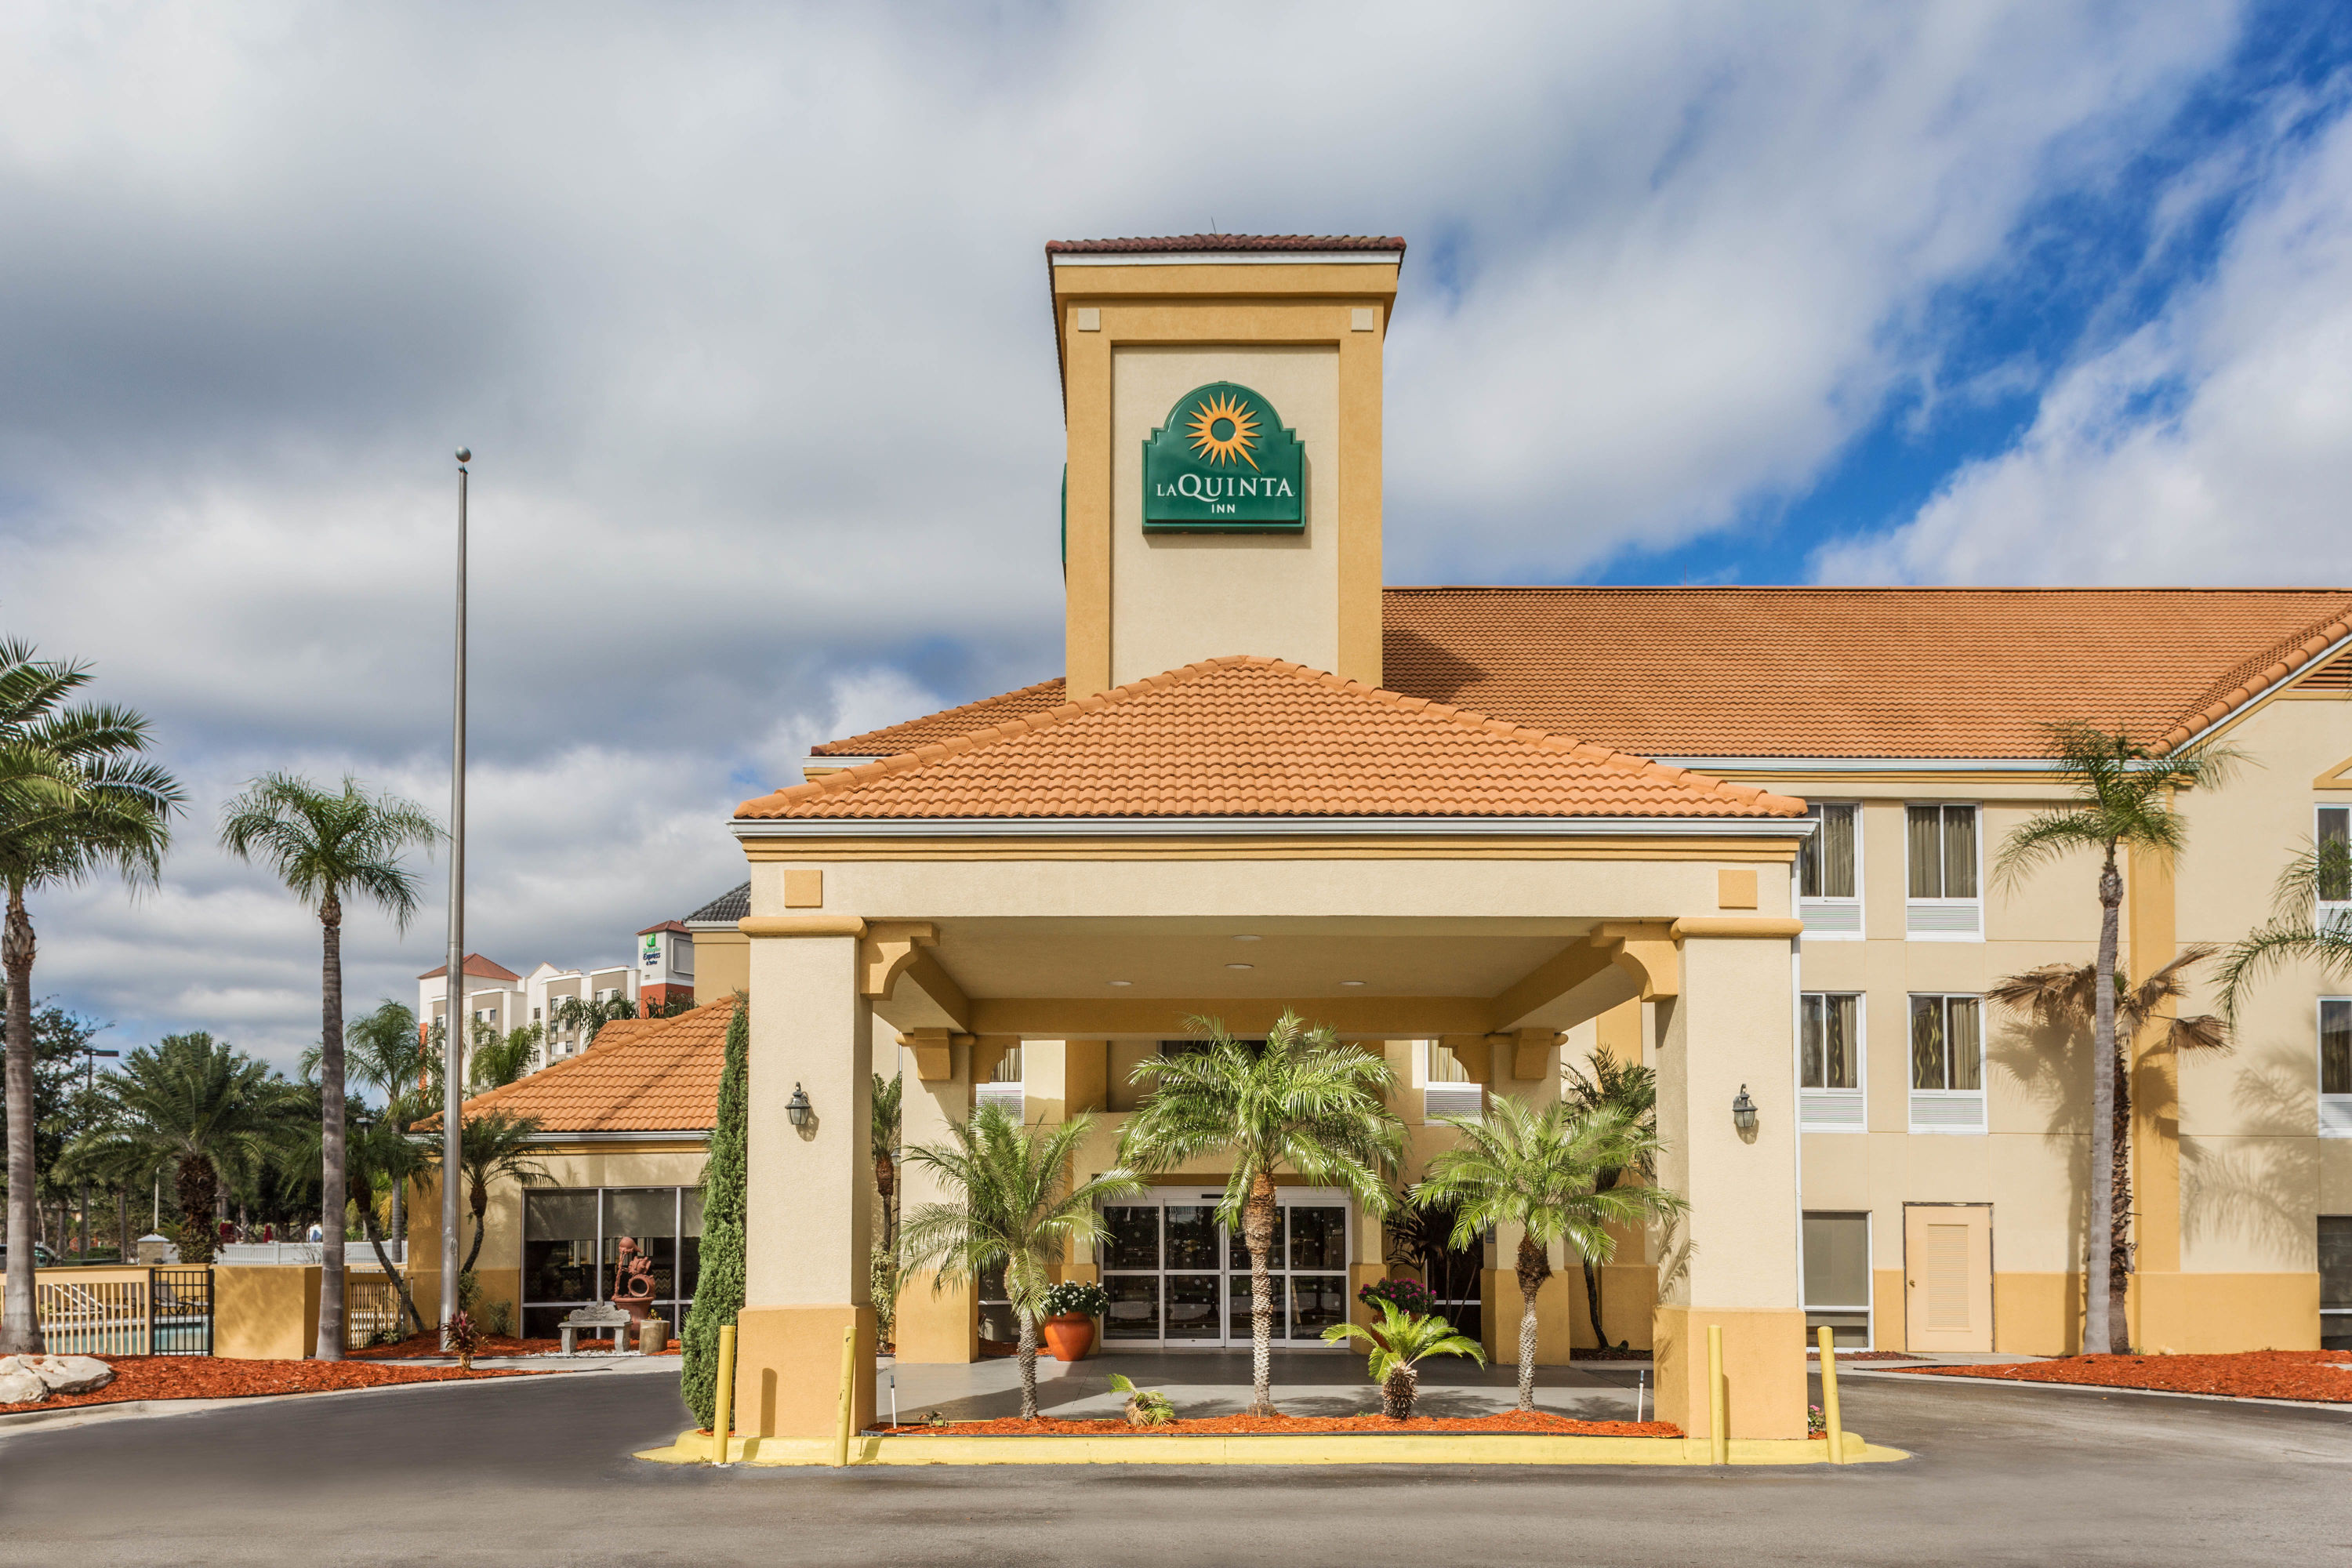 La Quinta Inn & Suites by Wyndham Orlando Universal area Orlando, FL